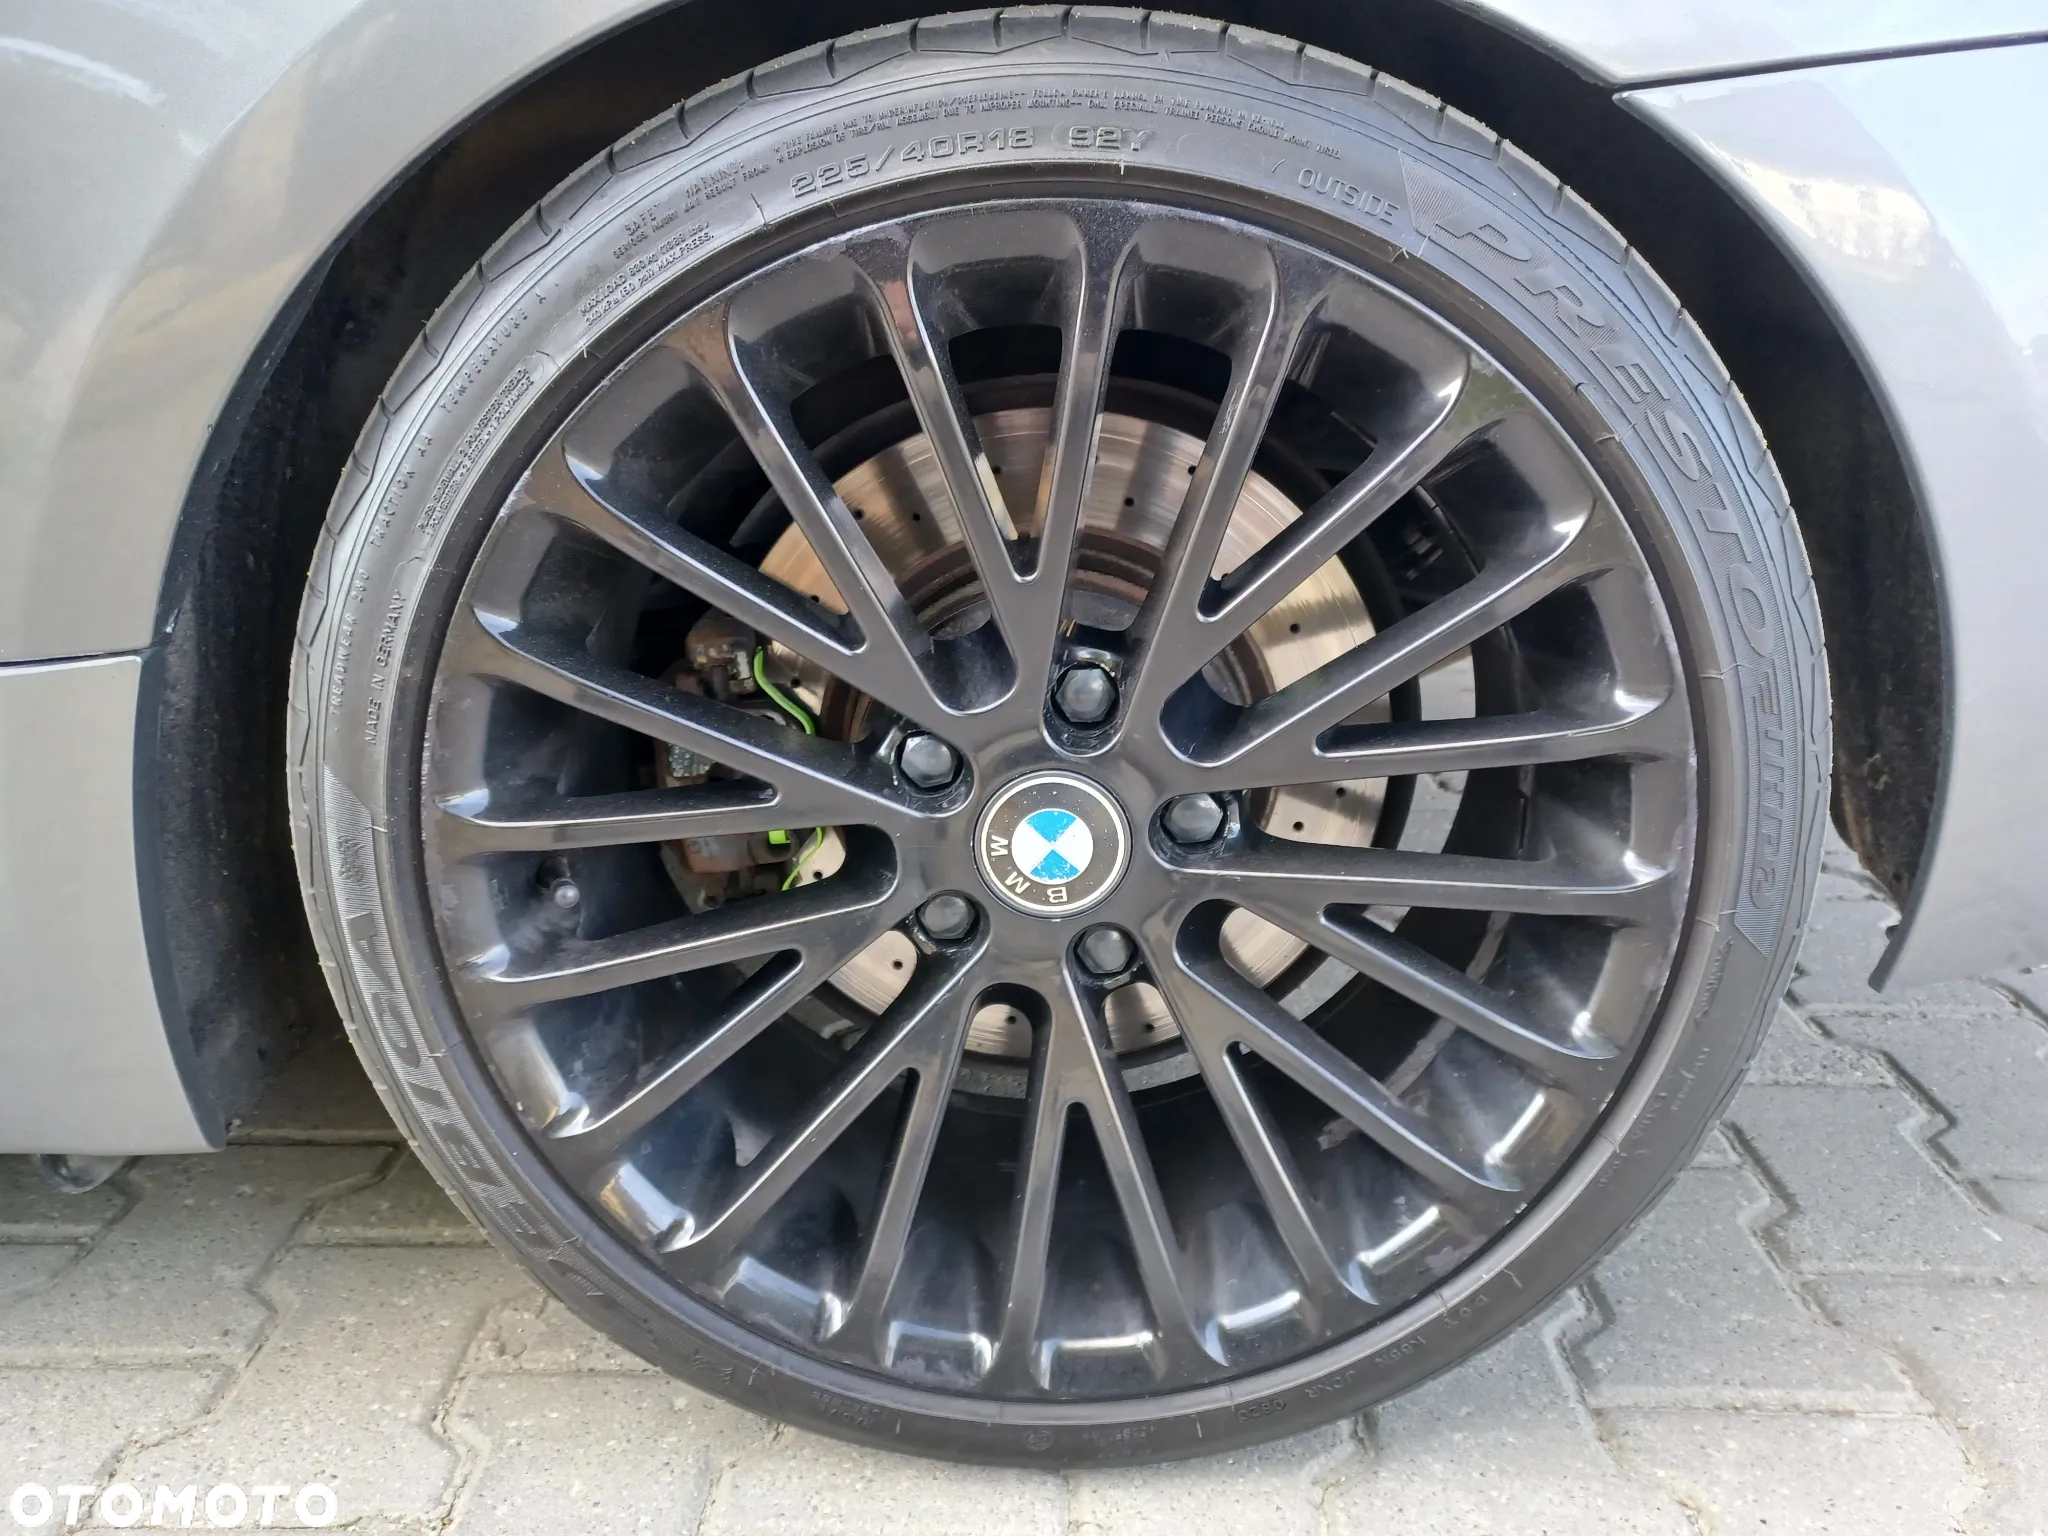 BMW Seria 3 - 27